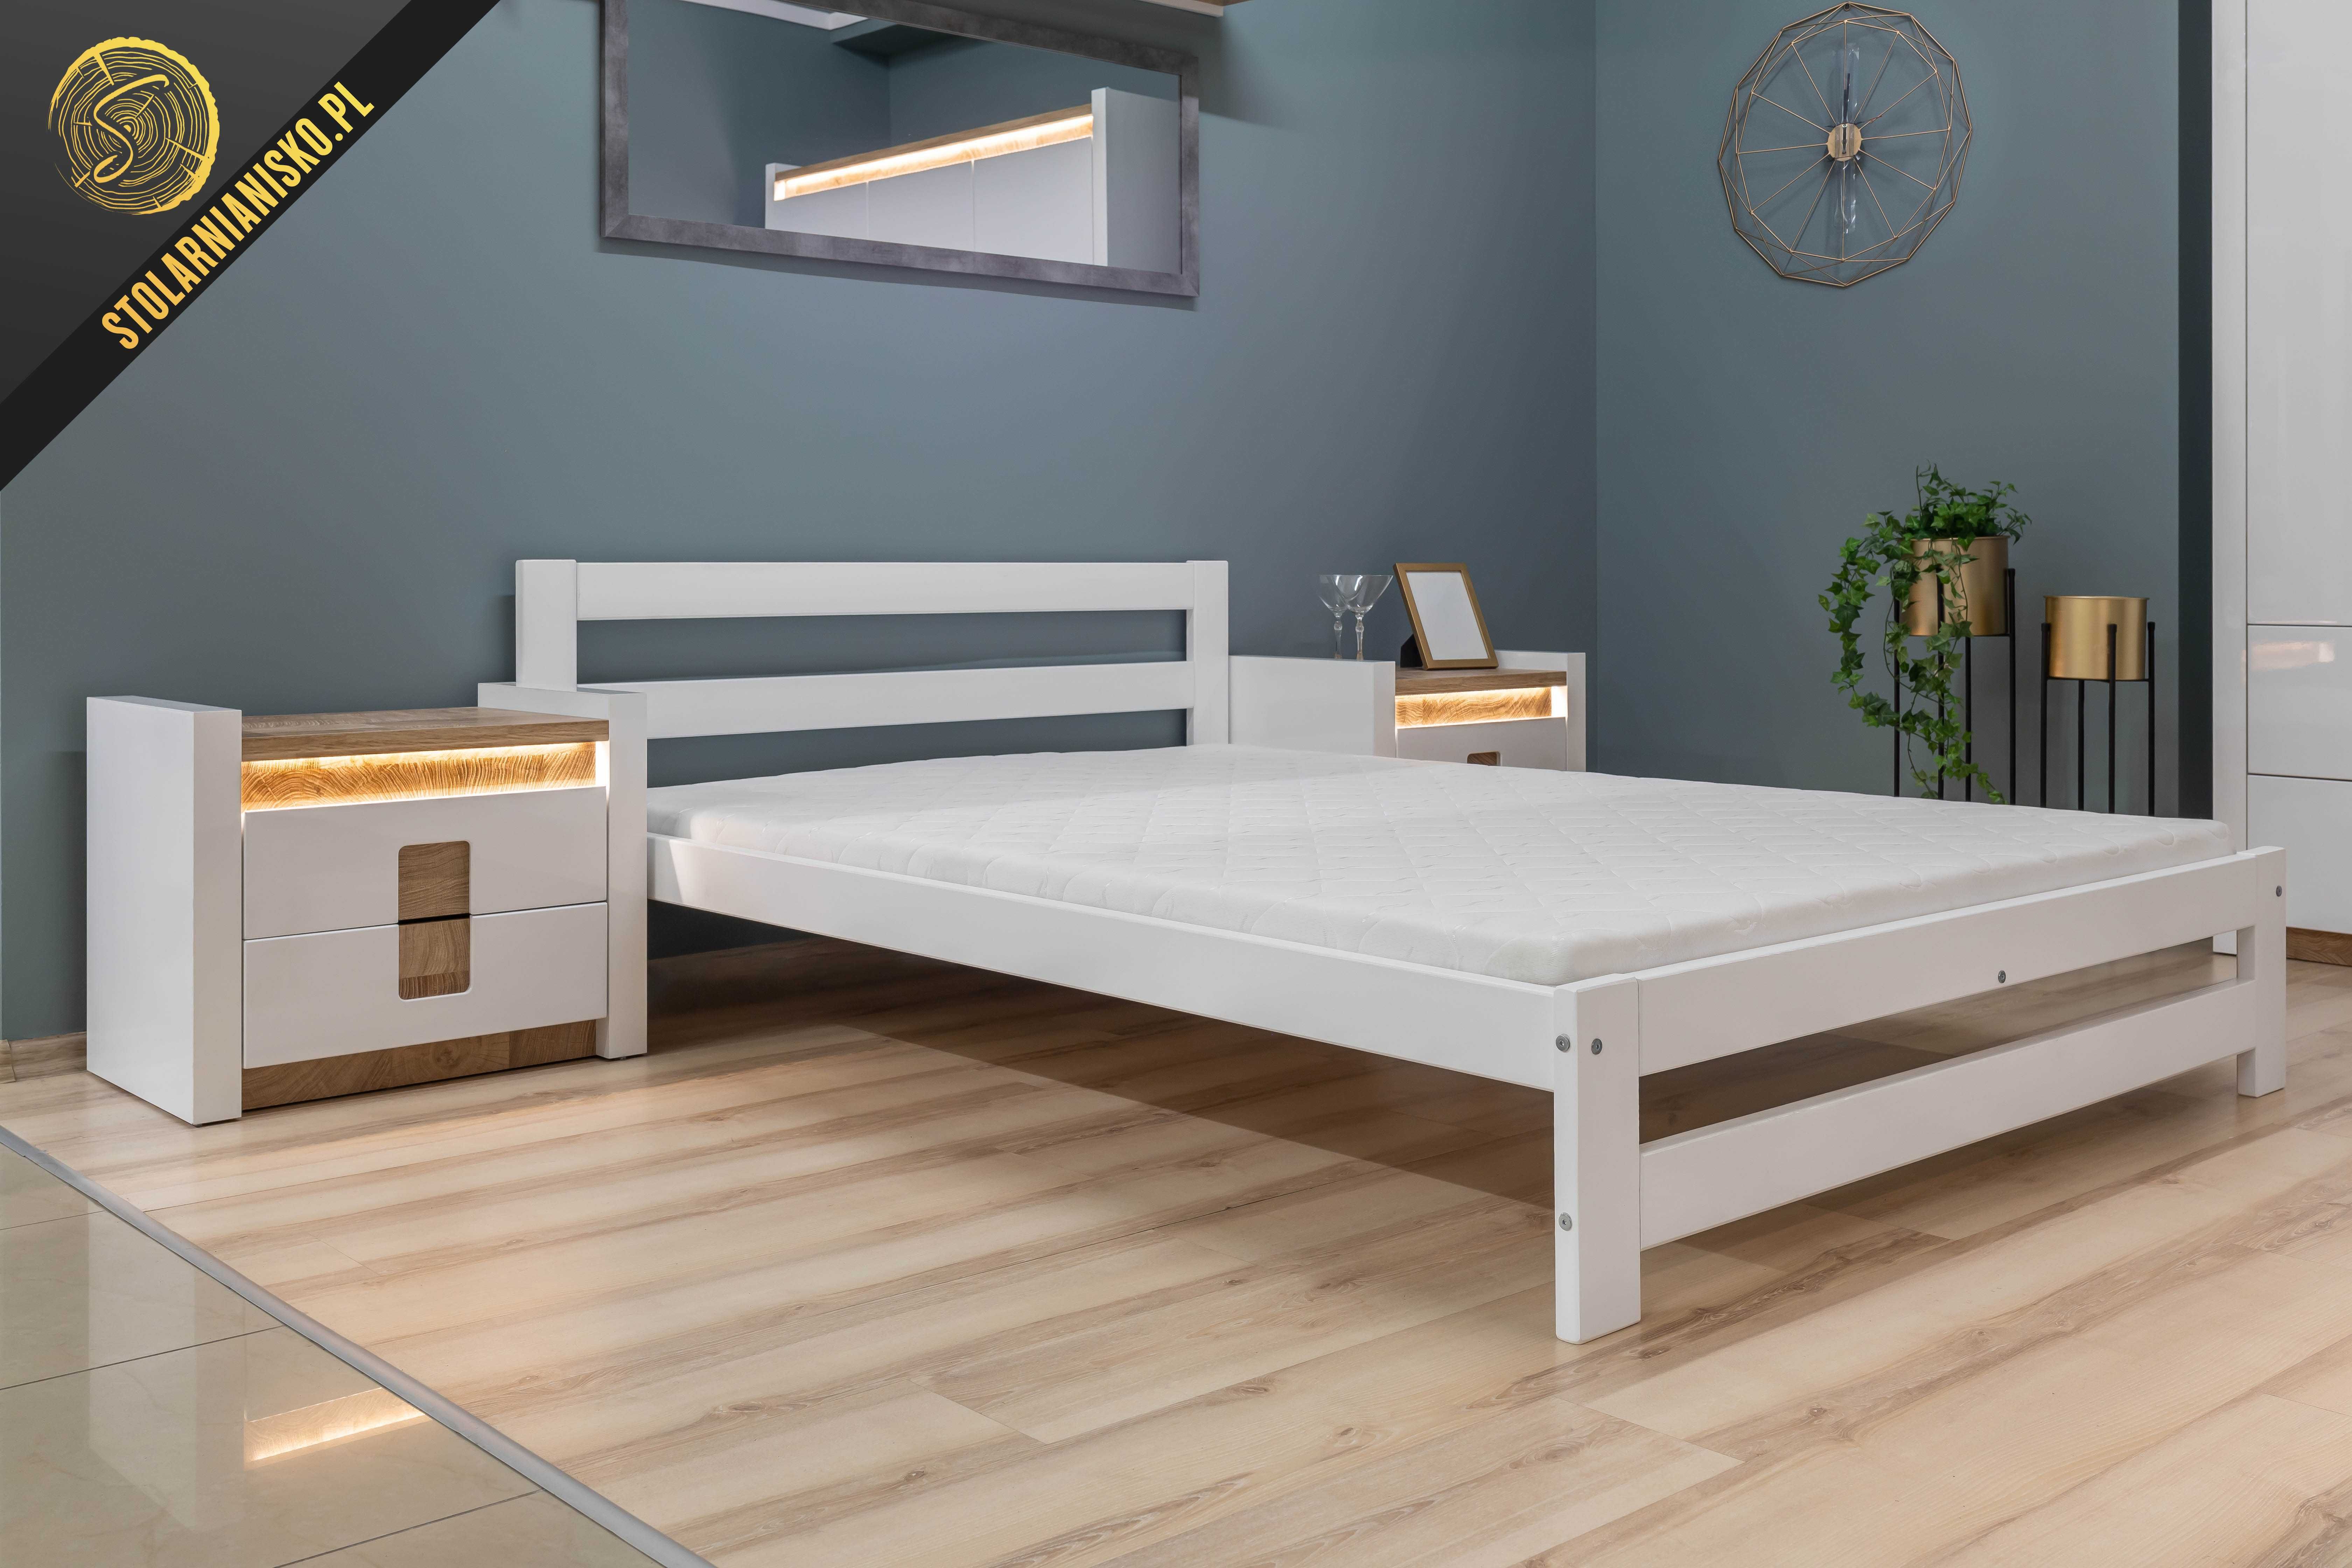 Łóżko drewniane sosnowe lakierowane białe 140x200 od Producenta